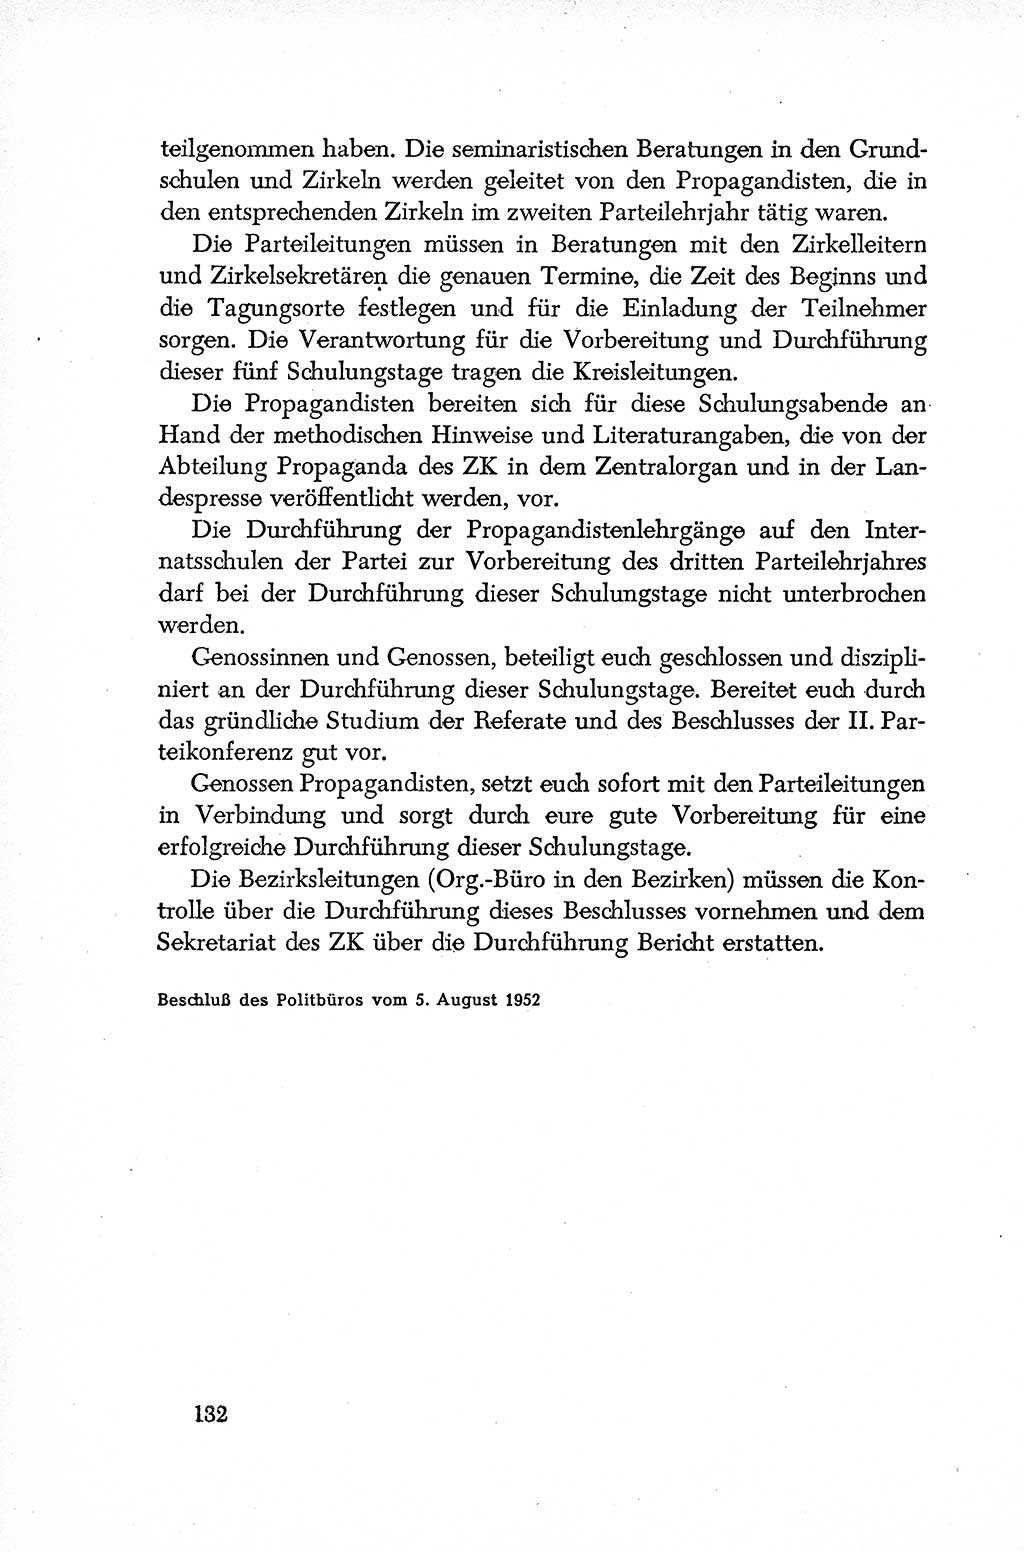 Dokumente der Sozialistischen Einheitspartei Deutschlands (SED) [Deutsche Demokratische Republik (DDR)] 1952-1953, Seite 132 (Dok. SED DDR 1952-1953, S. 132)